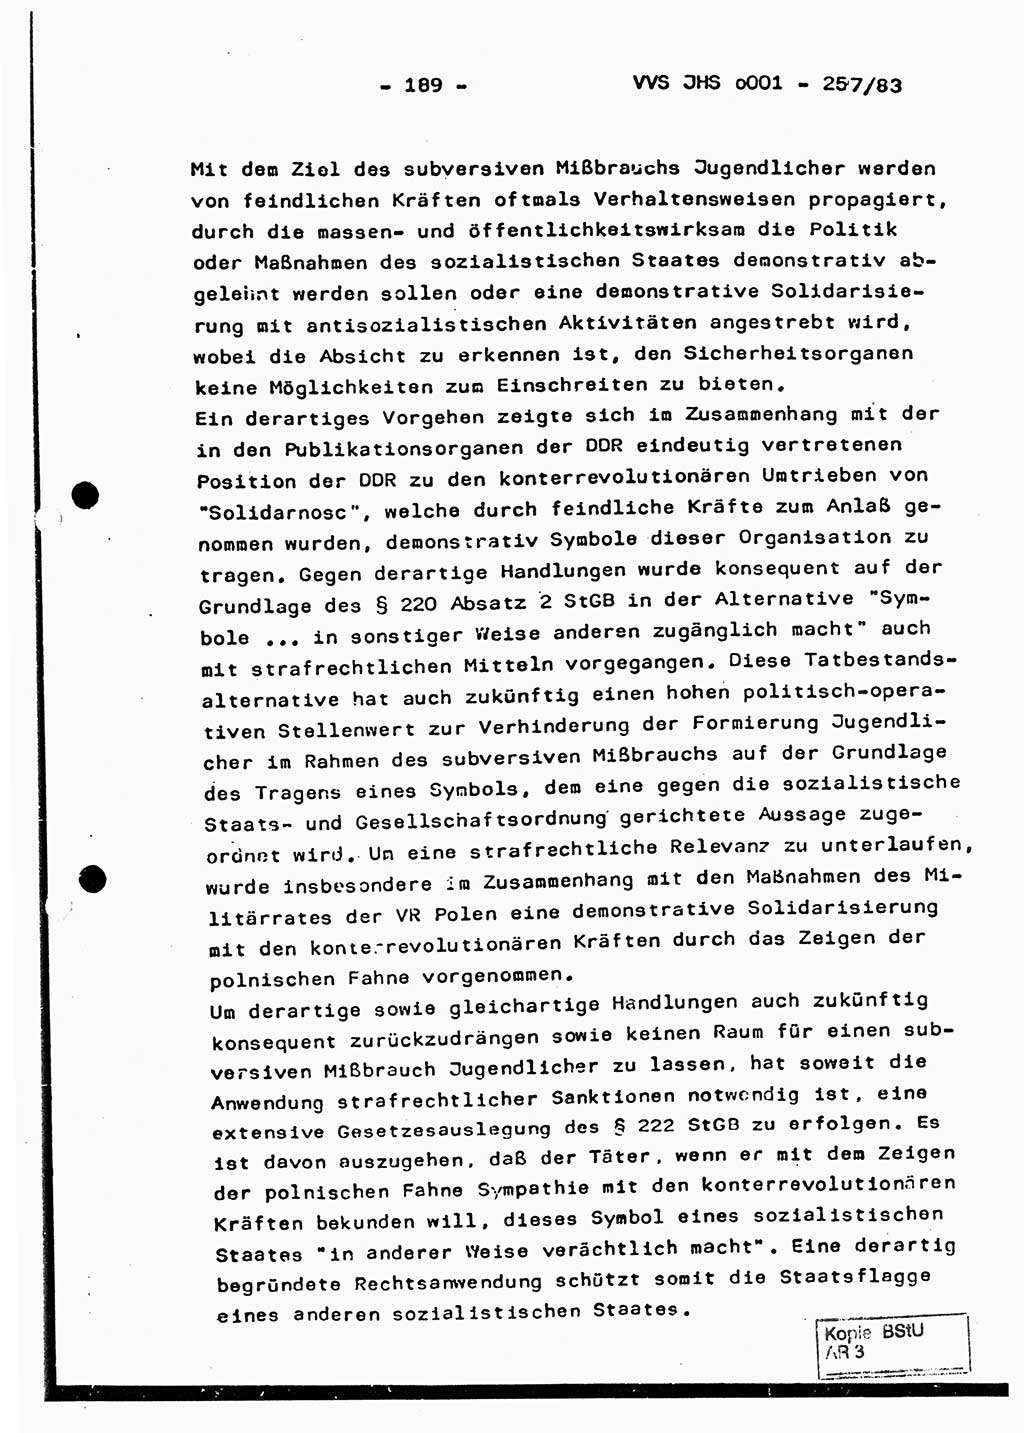 Dissertation, Oberst Helmut Lubas (BV Mdg.), Oberstleutnant Manfred Eschberger (HA IX), Oberleutnant Hans-Jürgen Ludwig (JHS), Ministerium für Staatssicherheit (MfS) [Deutsche Demokratische Republik (DDR)], Juristische Hochschule (JHS), Vertrauliche Verschlußsache (VVS) o001-257/83, Potsdam 1983, Seite 189 (Diss. MfS DDR JHS VVS o001-257/83 1983, S. 189)